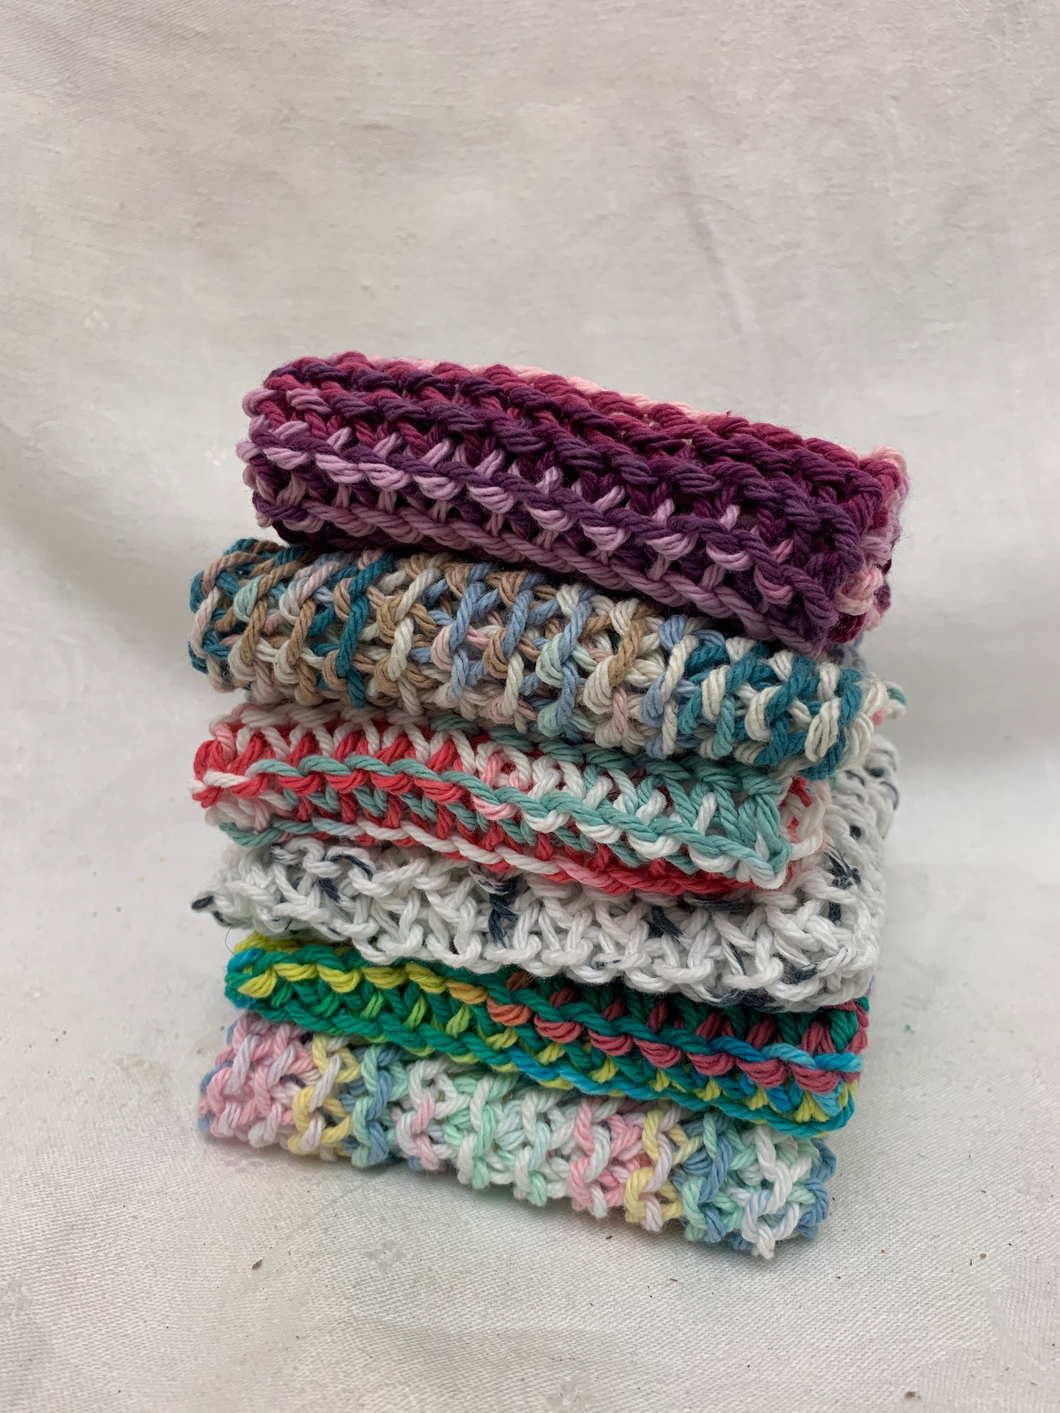 mikki - dishcloth - hand knit - cotton - LOCALLY MADE